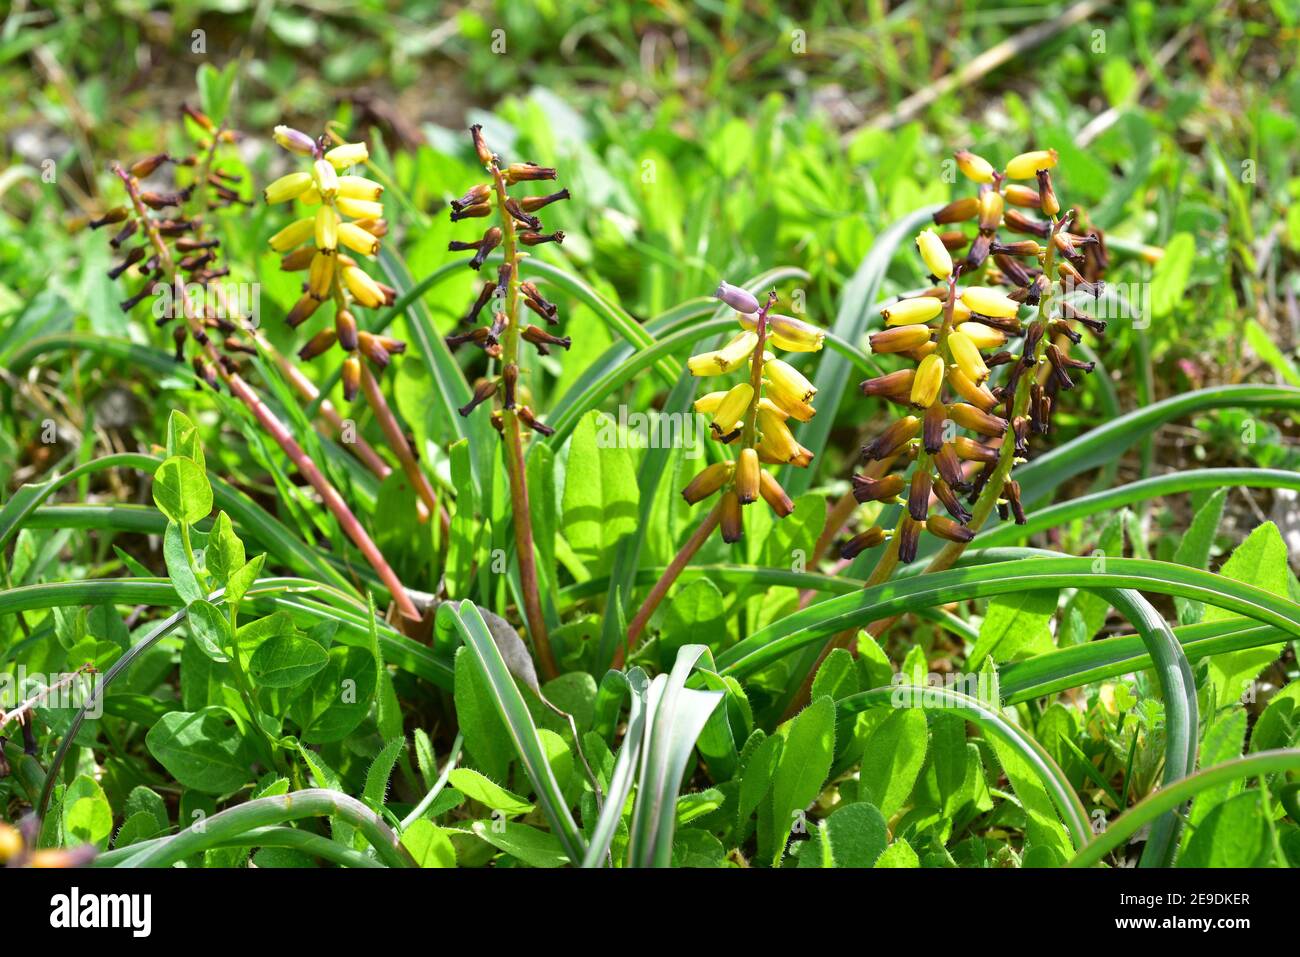 Traubenhyazinthe (Muscari macrocarpum) ist eine mehrjährige Pflanze, die auf Kreta (Griechenland) und in der Türkei heimische Pflanze ist. Blühende Pflanze. Stockfoto